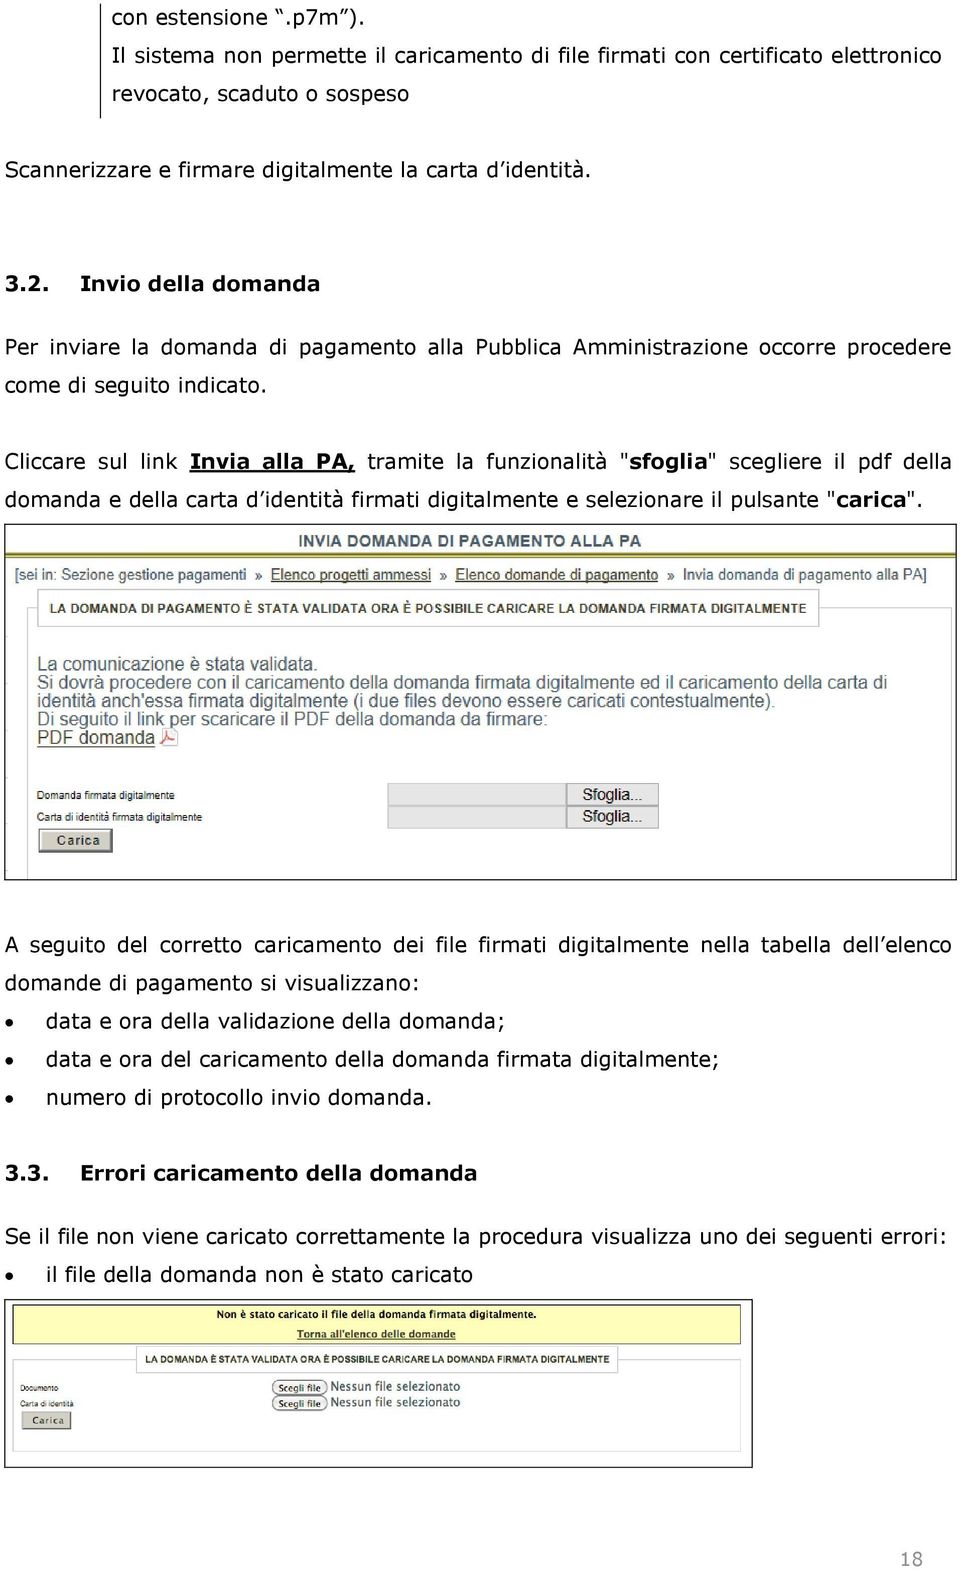 Cliccare sul link Invia alla PA, tramite la funzionalità "sfoglia" scegliere il pdf della domanda e della carta d identità firmati digitalmente e selezionare il pulsante "carica".